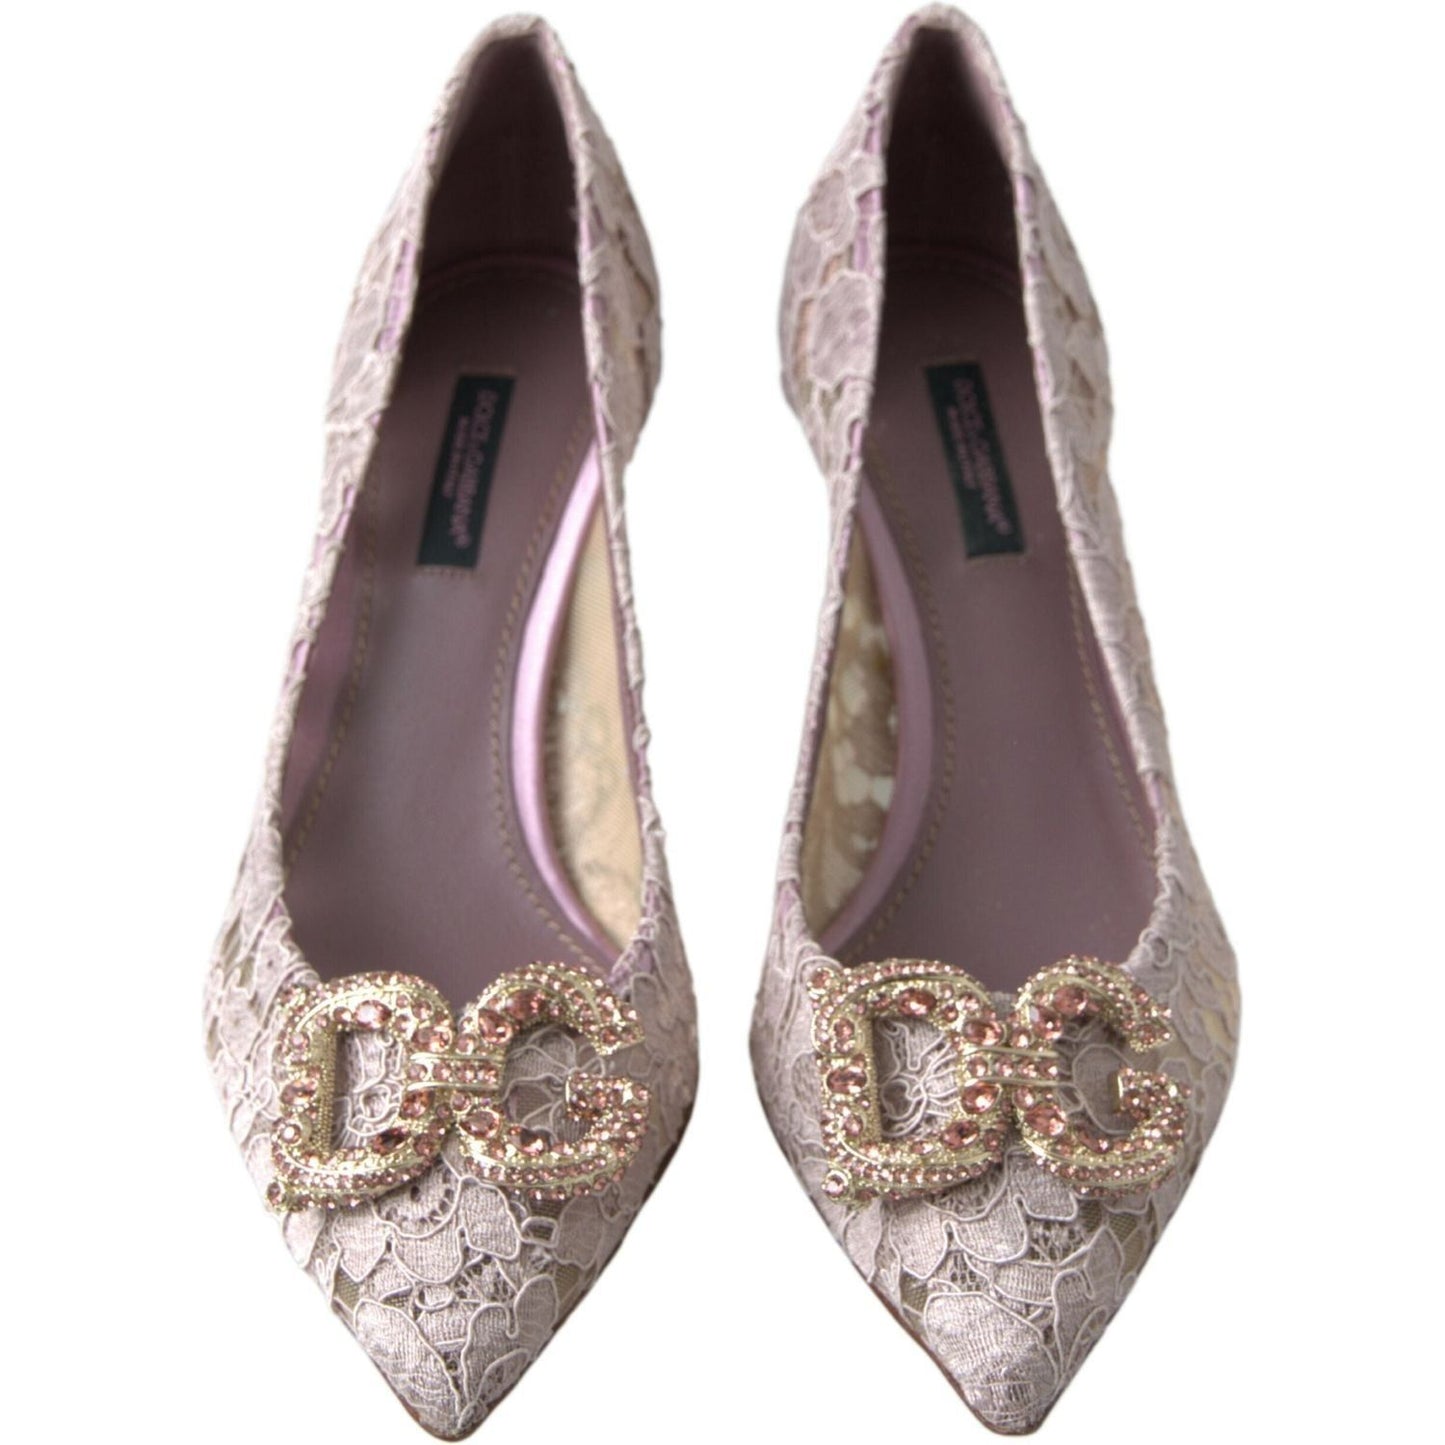 Dolce & Gabbana Elegant Pink Crystal Embellished Heels pink-floral-lace-dg-crystal-pumps-shoes 465A0083-scaled-88fd34ed-673.jpg